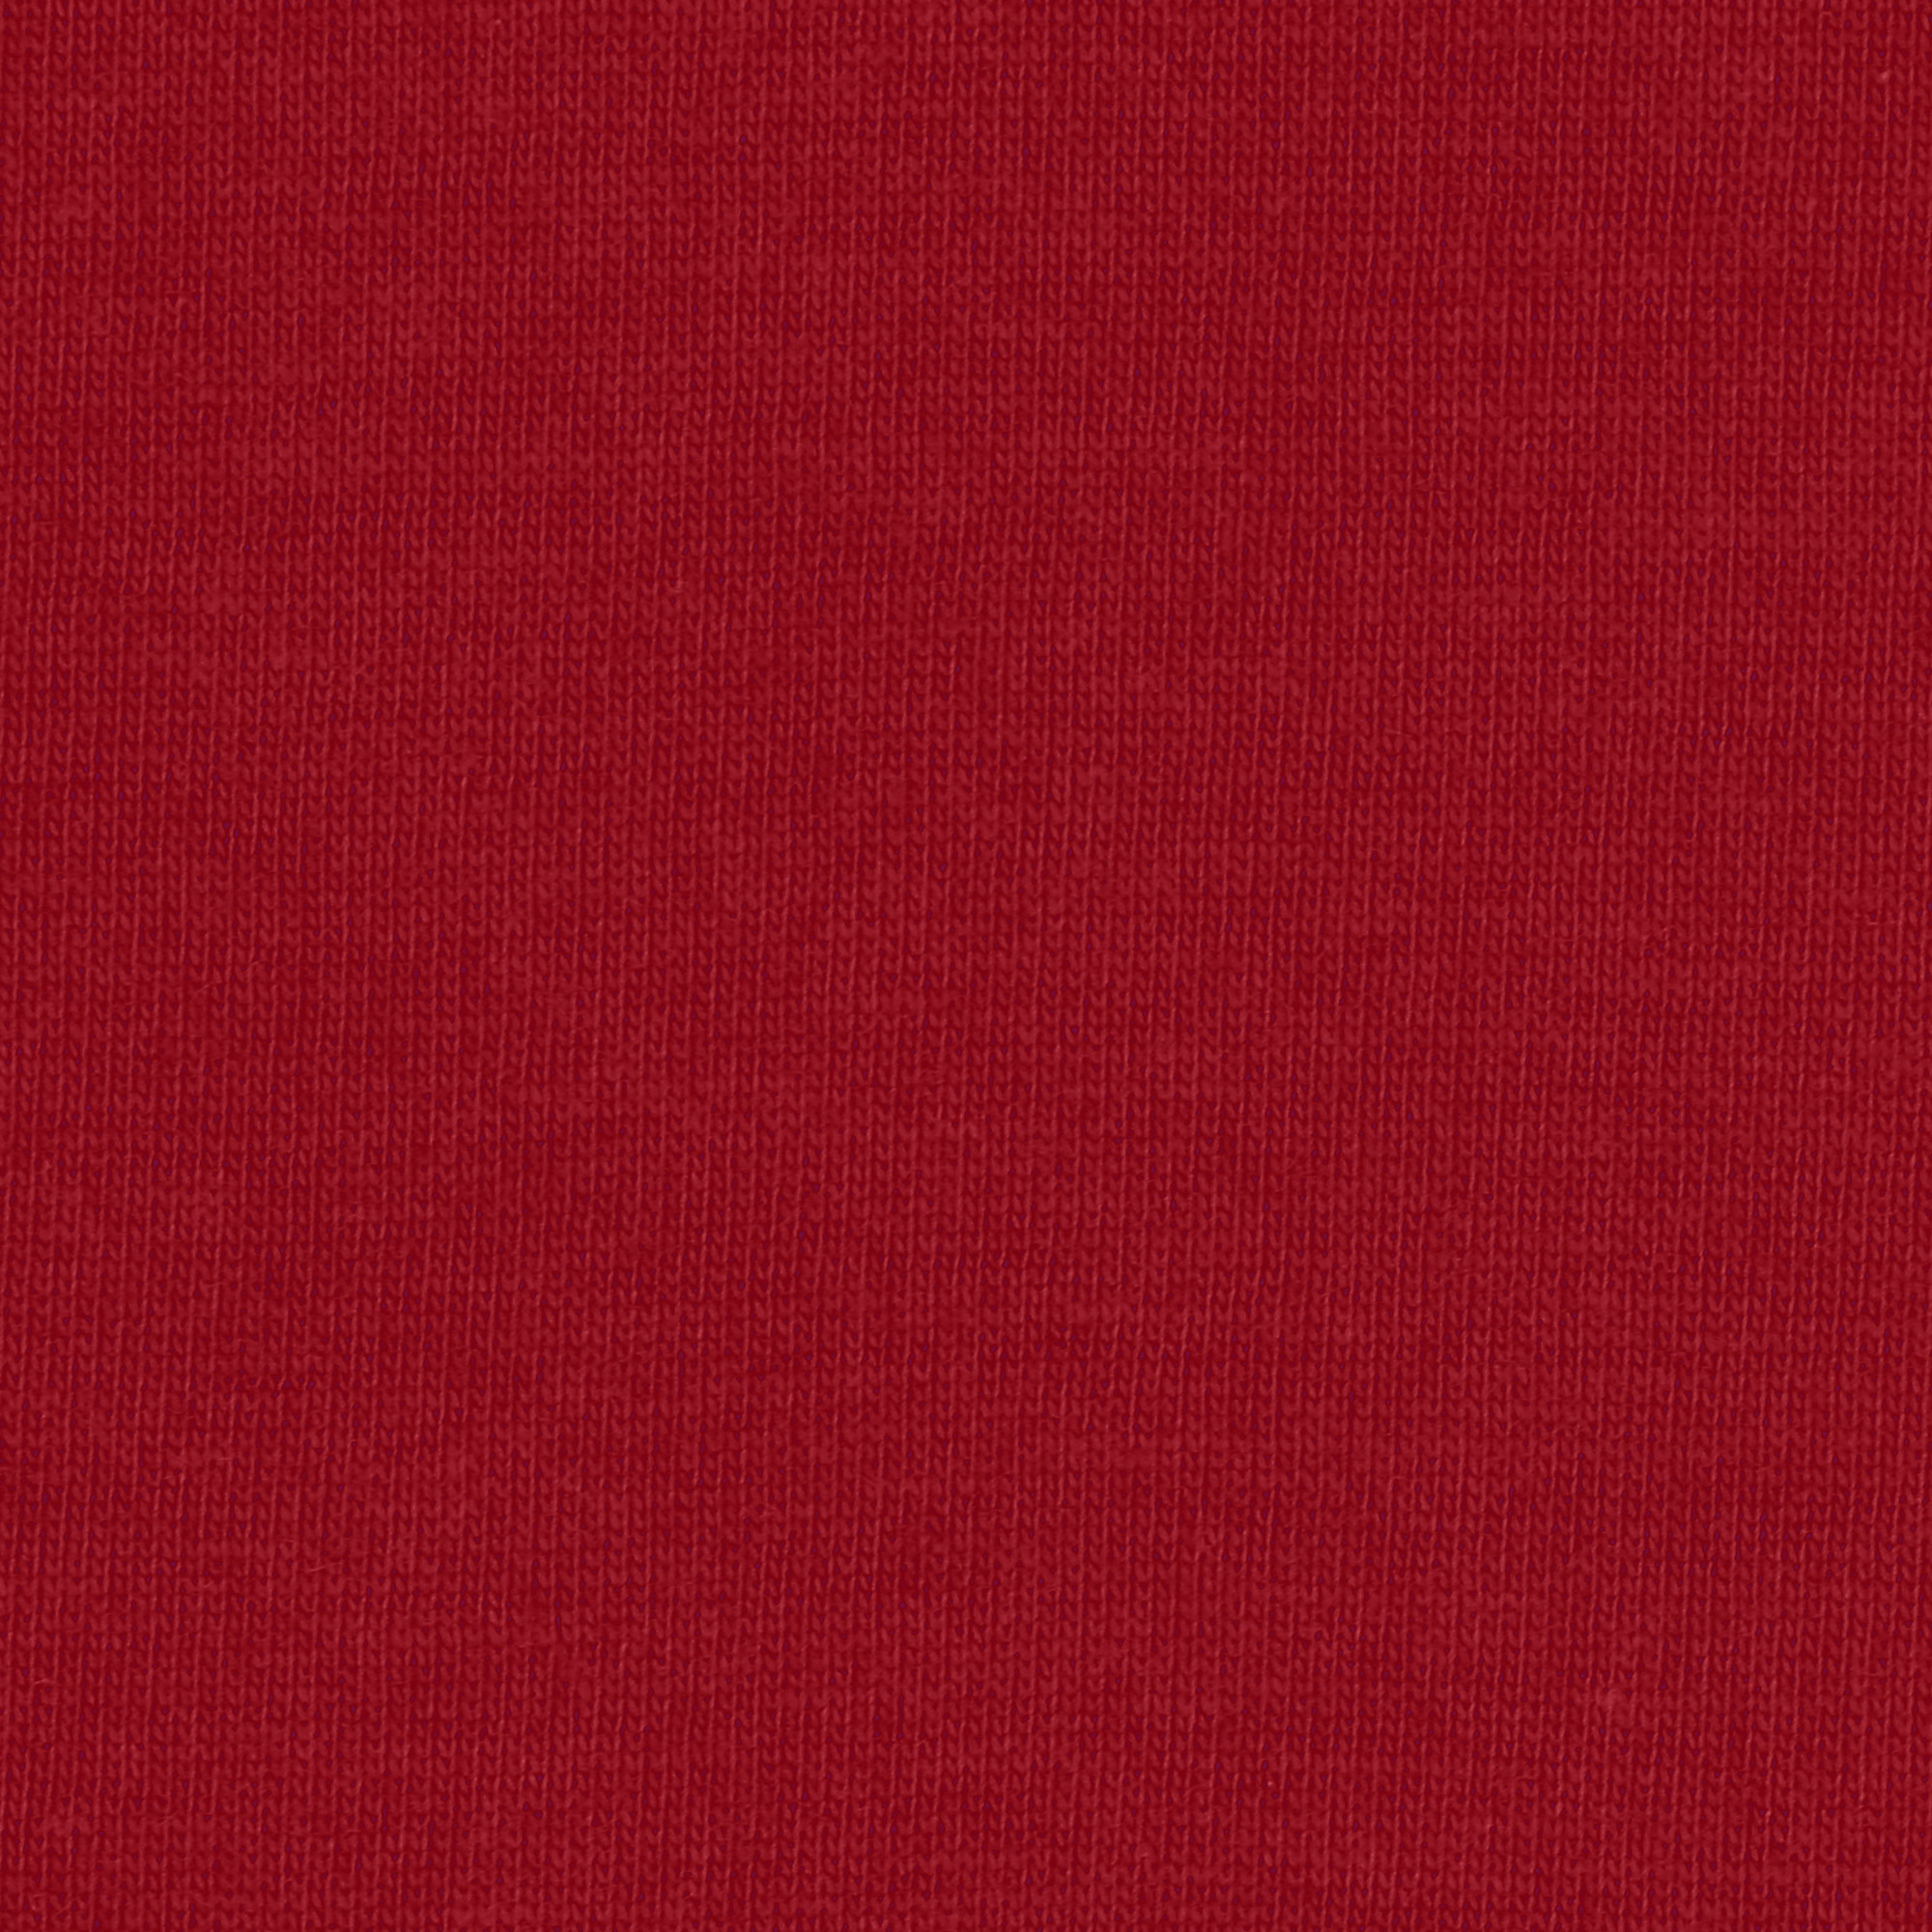 Футболка мужская AMADEY classic L 48-50 бордовая, цвет бордовый, размер L - фото 5